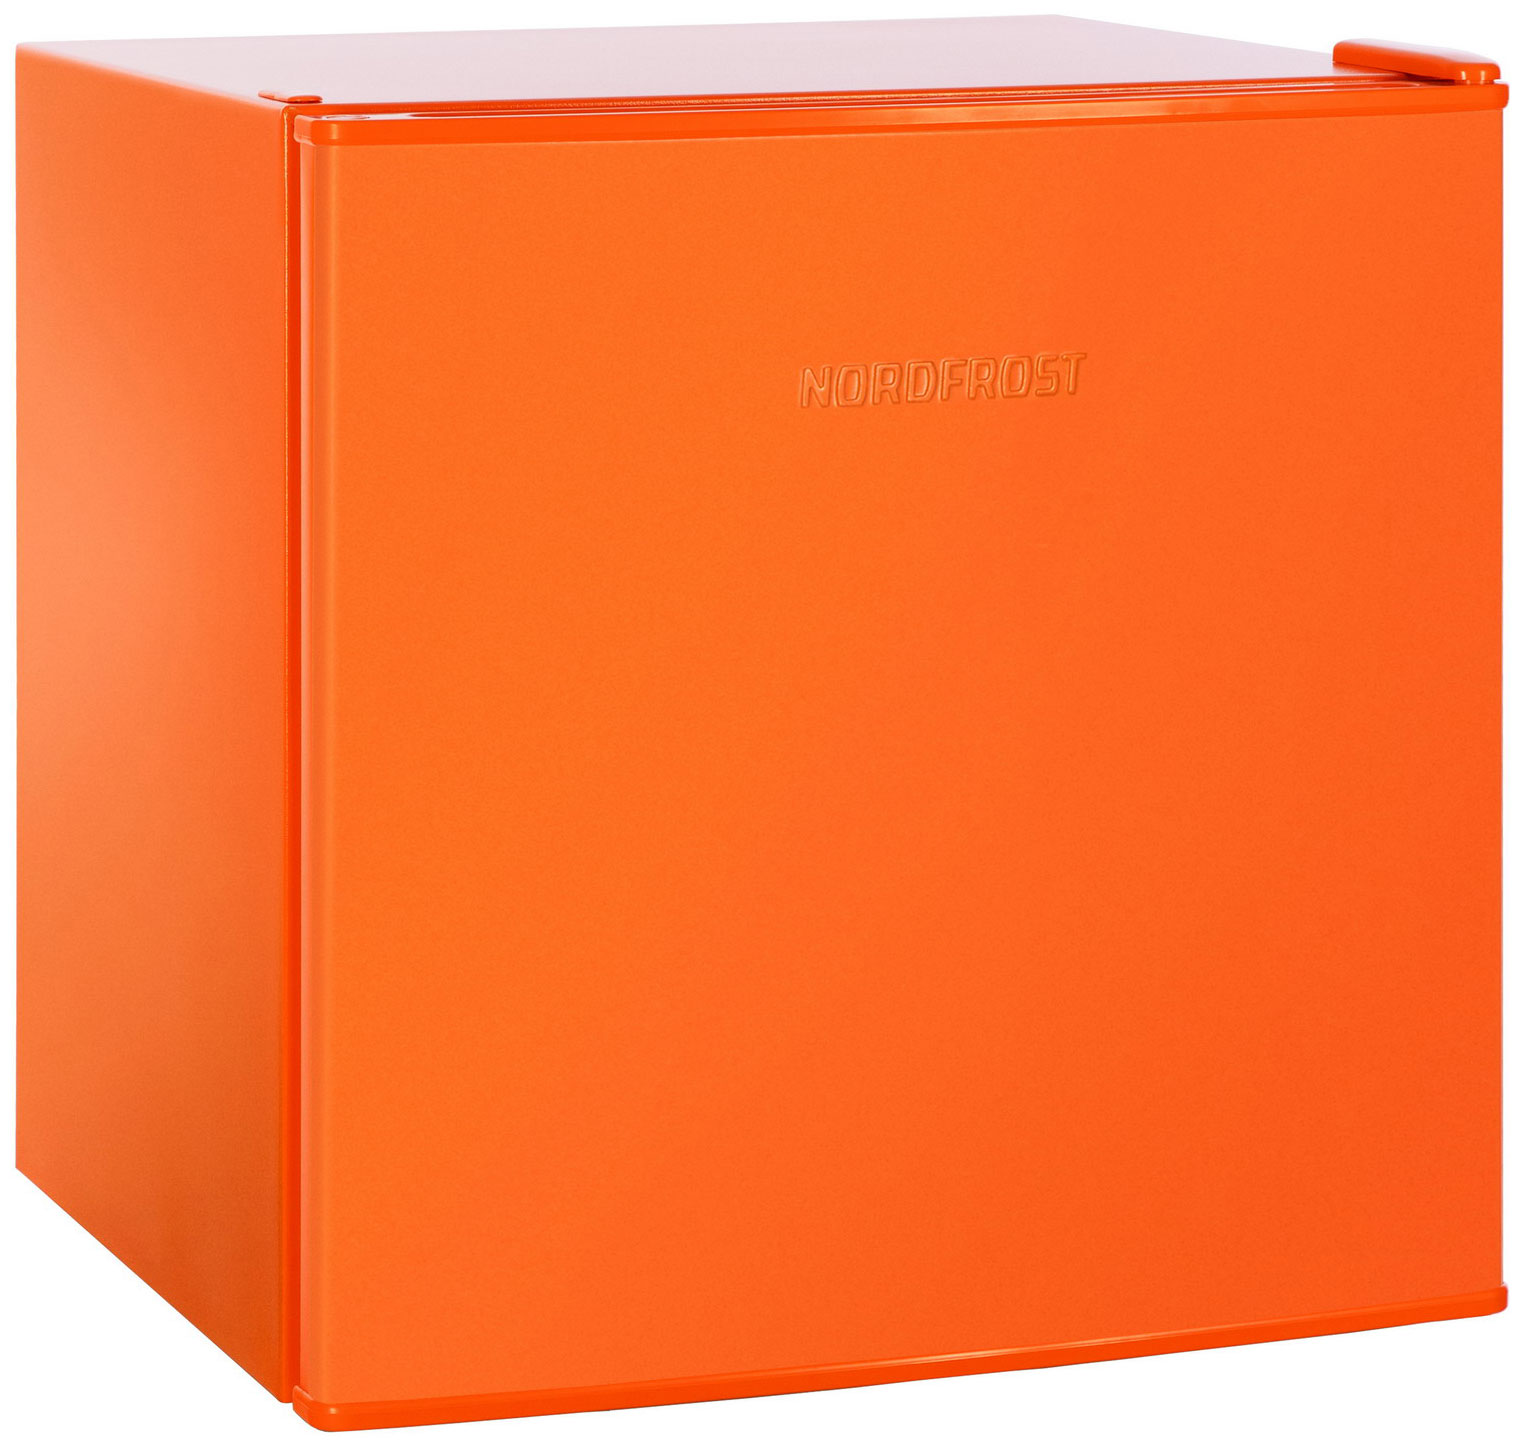 Холодильник NordFrost NR 402 оранжевый сковорода onyx d 28 см съёмная ручка стеклянная крышка антипригарное покрытие серый